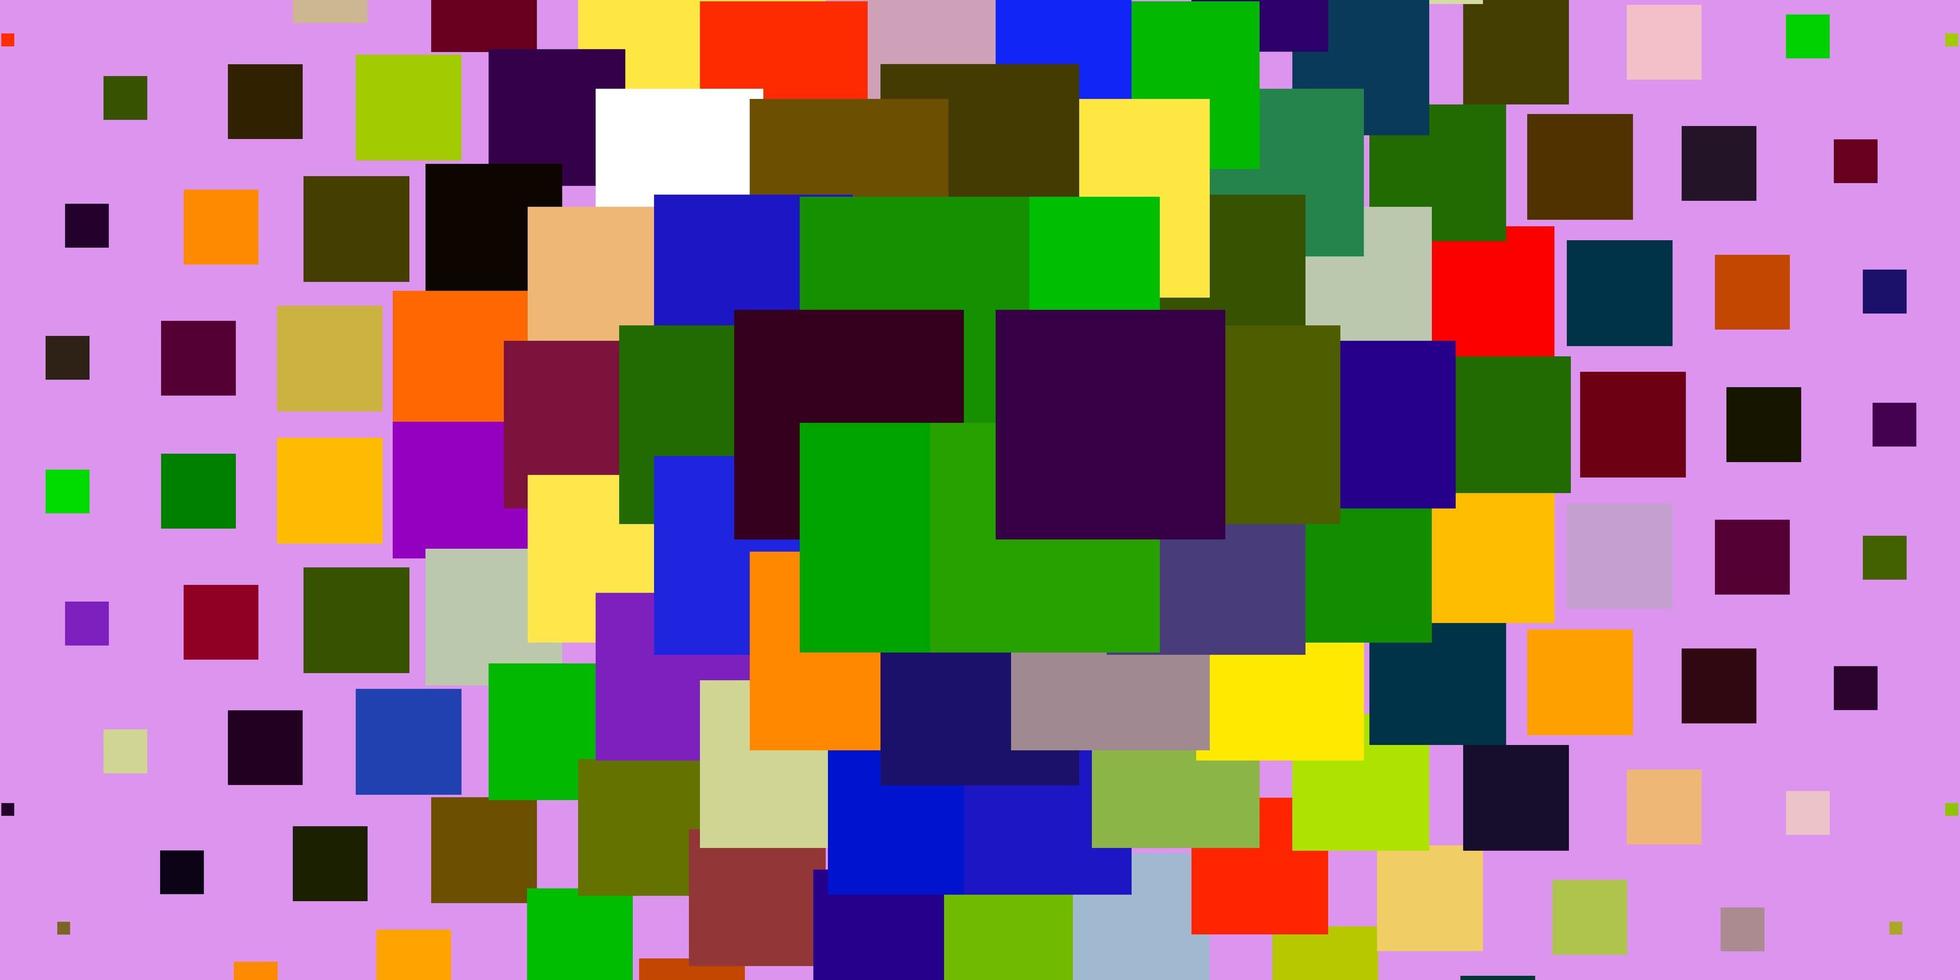 luz de fundo vector multicolor com retângulos.